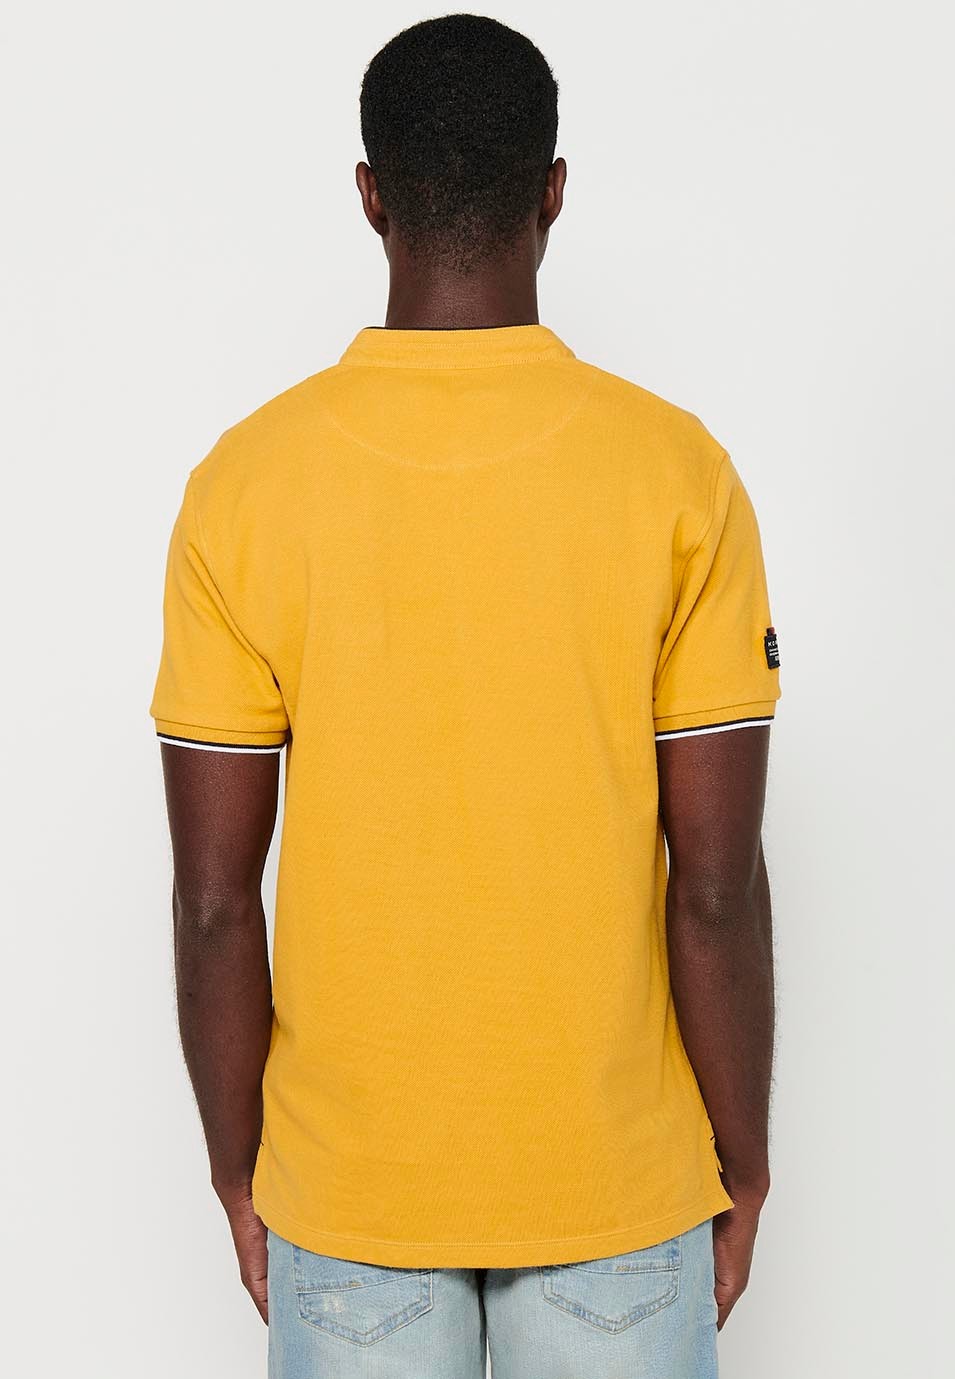 Kurzärmliges Baumwoll-Poloshirt mit geripptem Finish, Rundhalsausschnitt mit geknöpfter Öffnung und gelben Seitenschlitzen für Herren 7